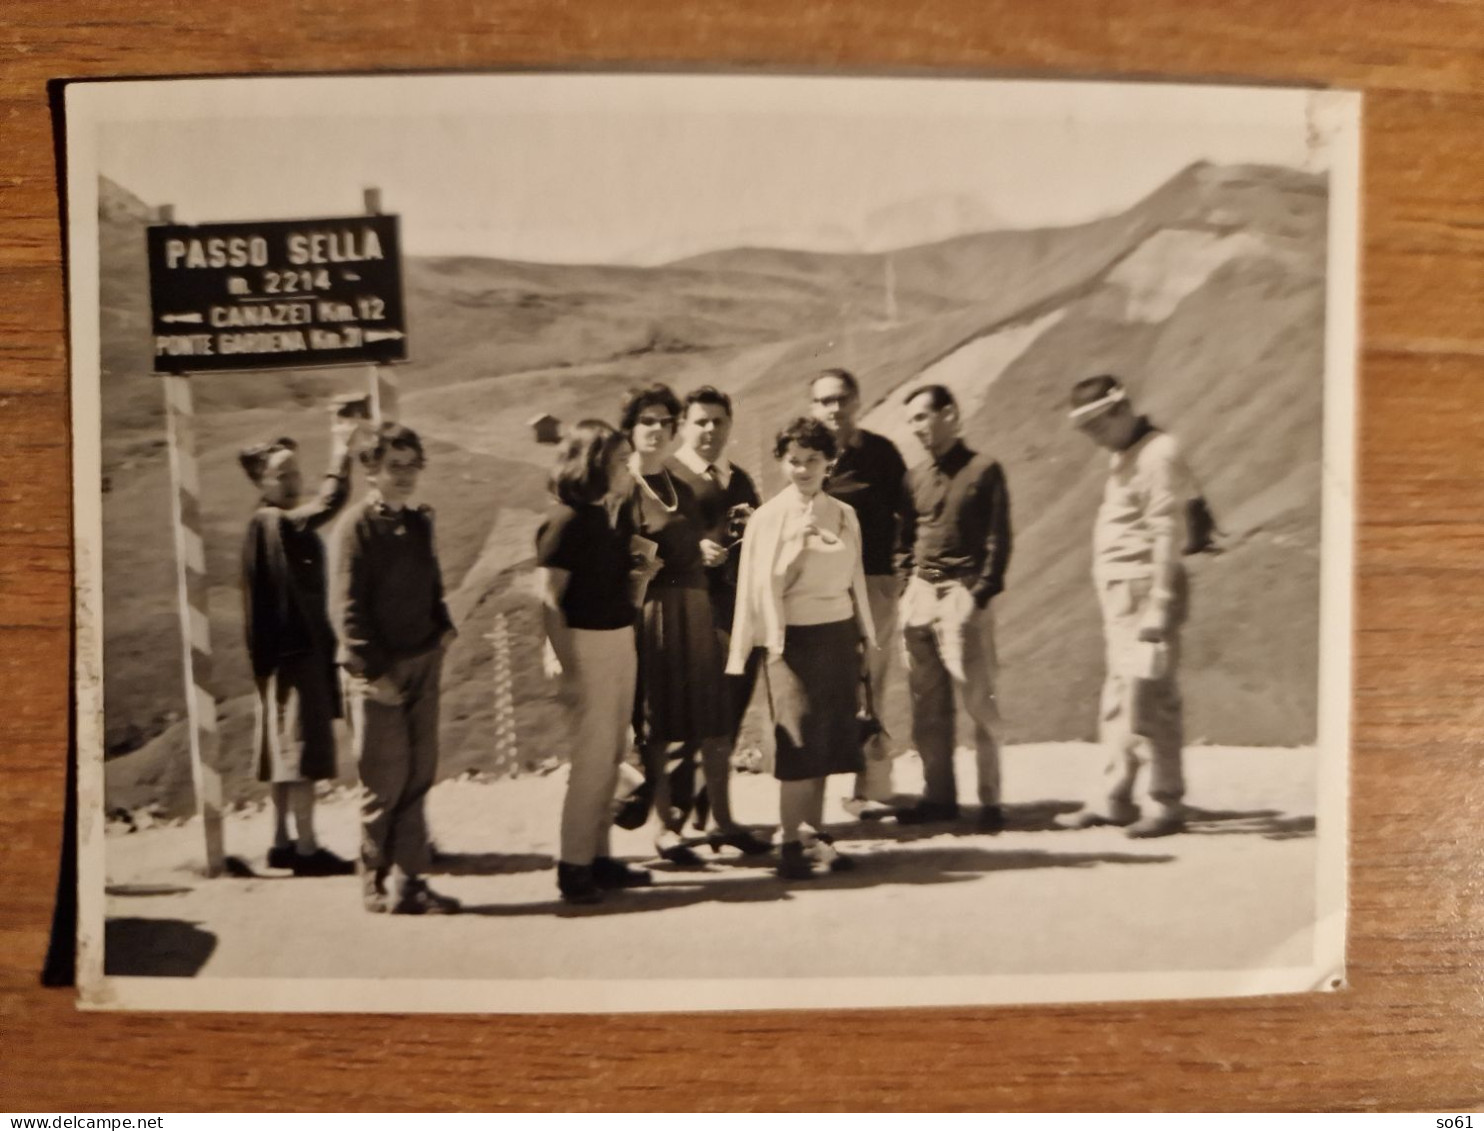 19302. Fotografia D'epoca Passo Sella 1961 - 10,5x7,5 - Lugares